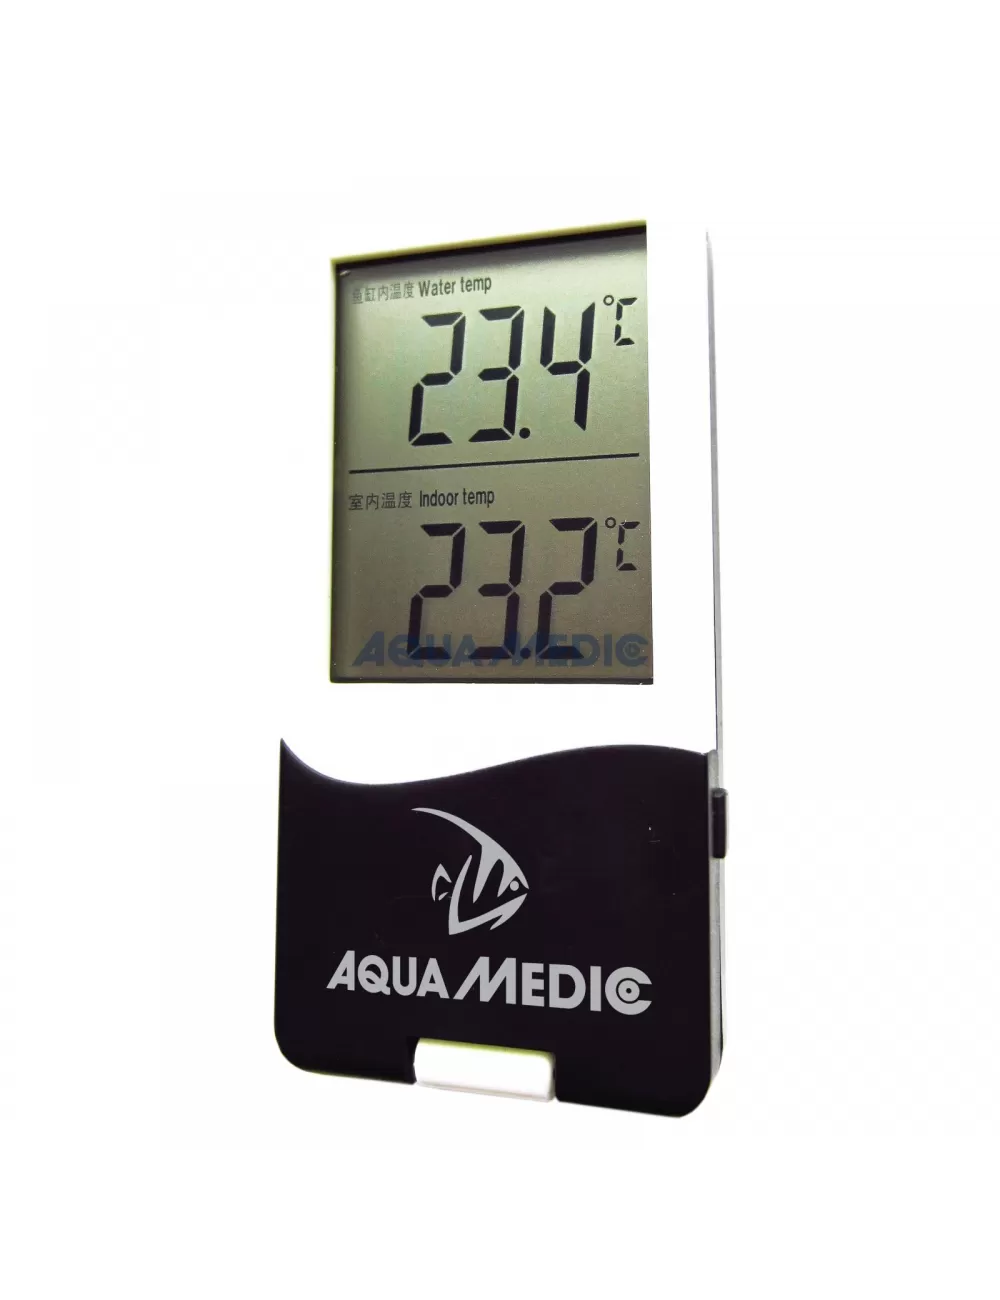 AQUA-MEDIC - T-Meter Twin - Termómetro externo para acuario